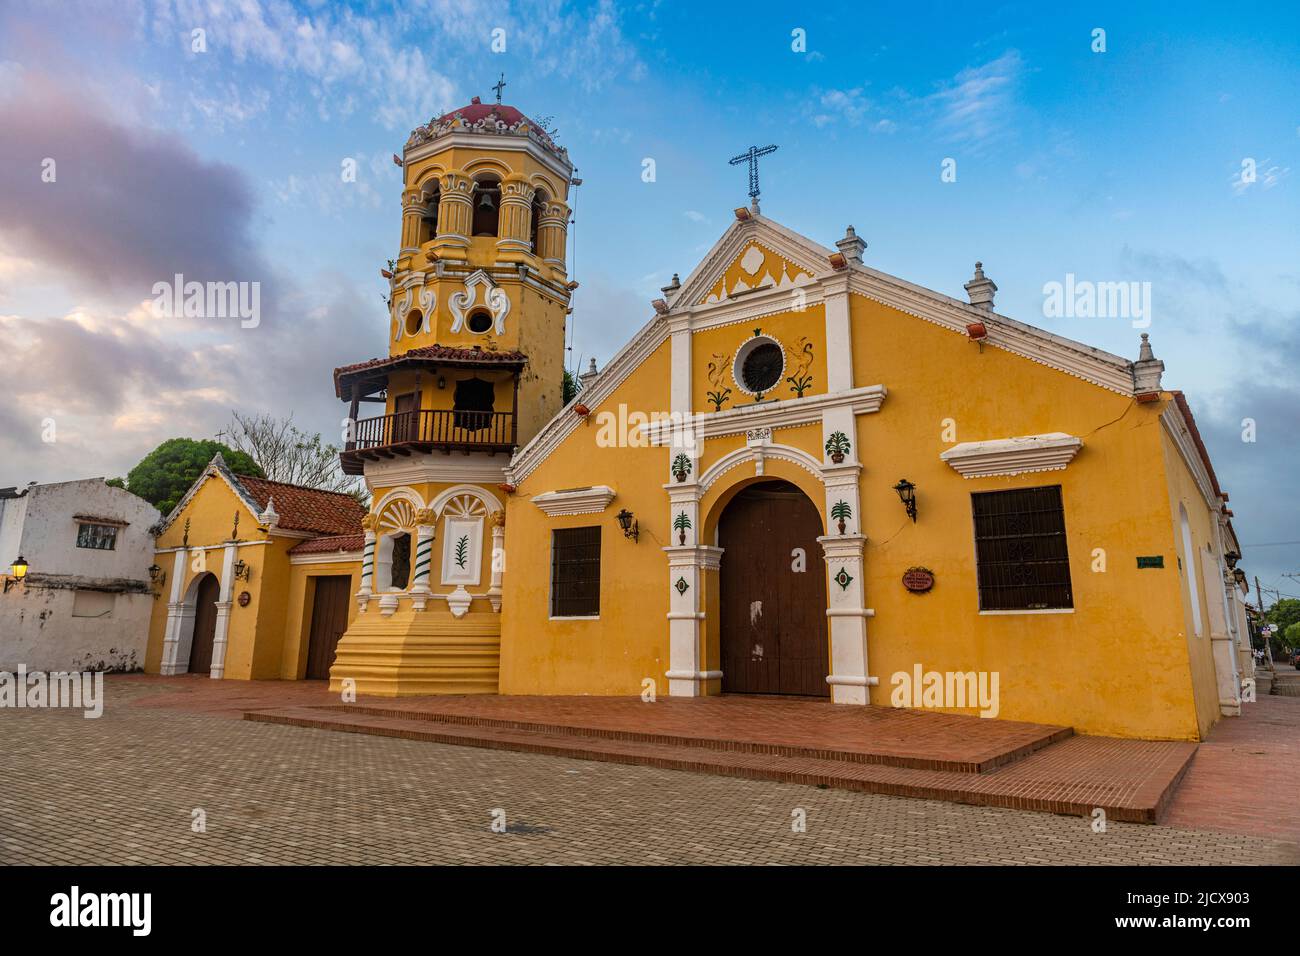 Iglesia De Santa Barbara, Mompox, UNESCO World Heritage Site, Colombia, South America Stock Photo